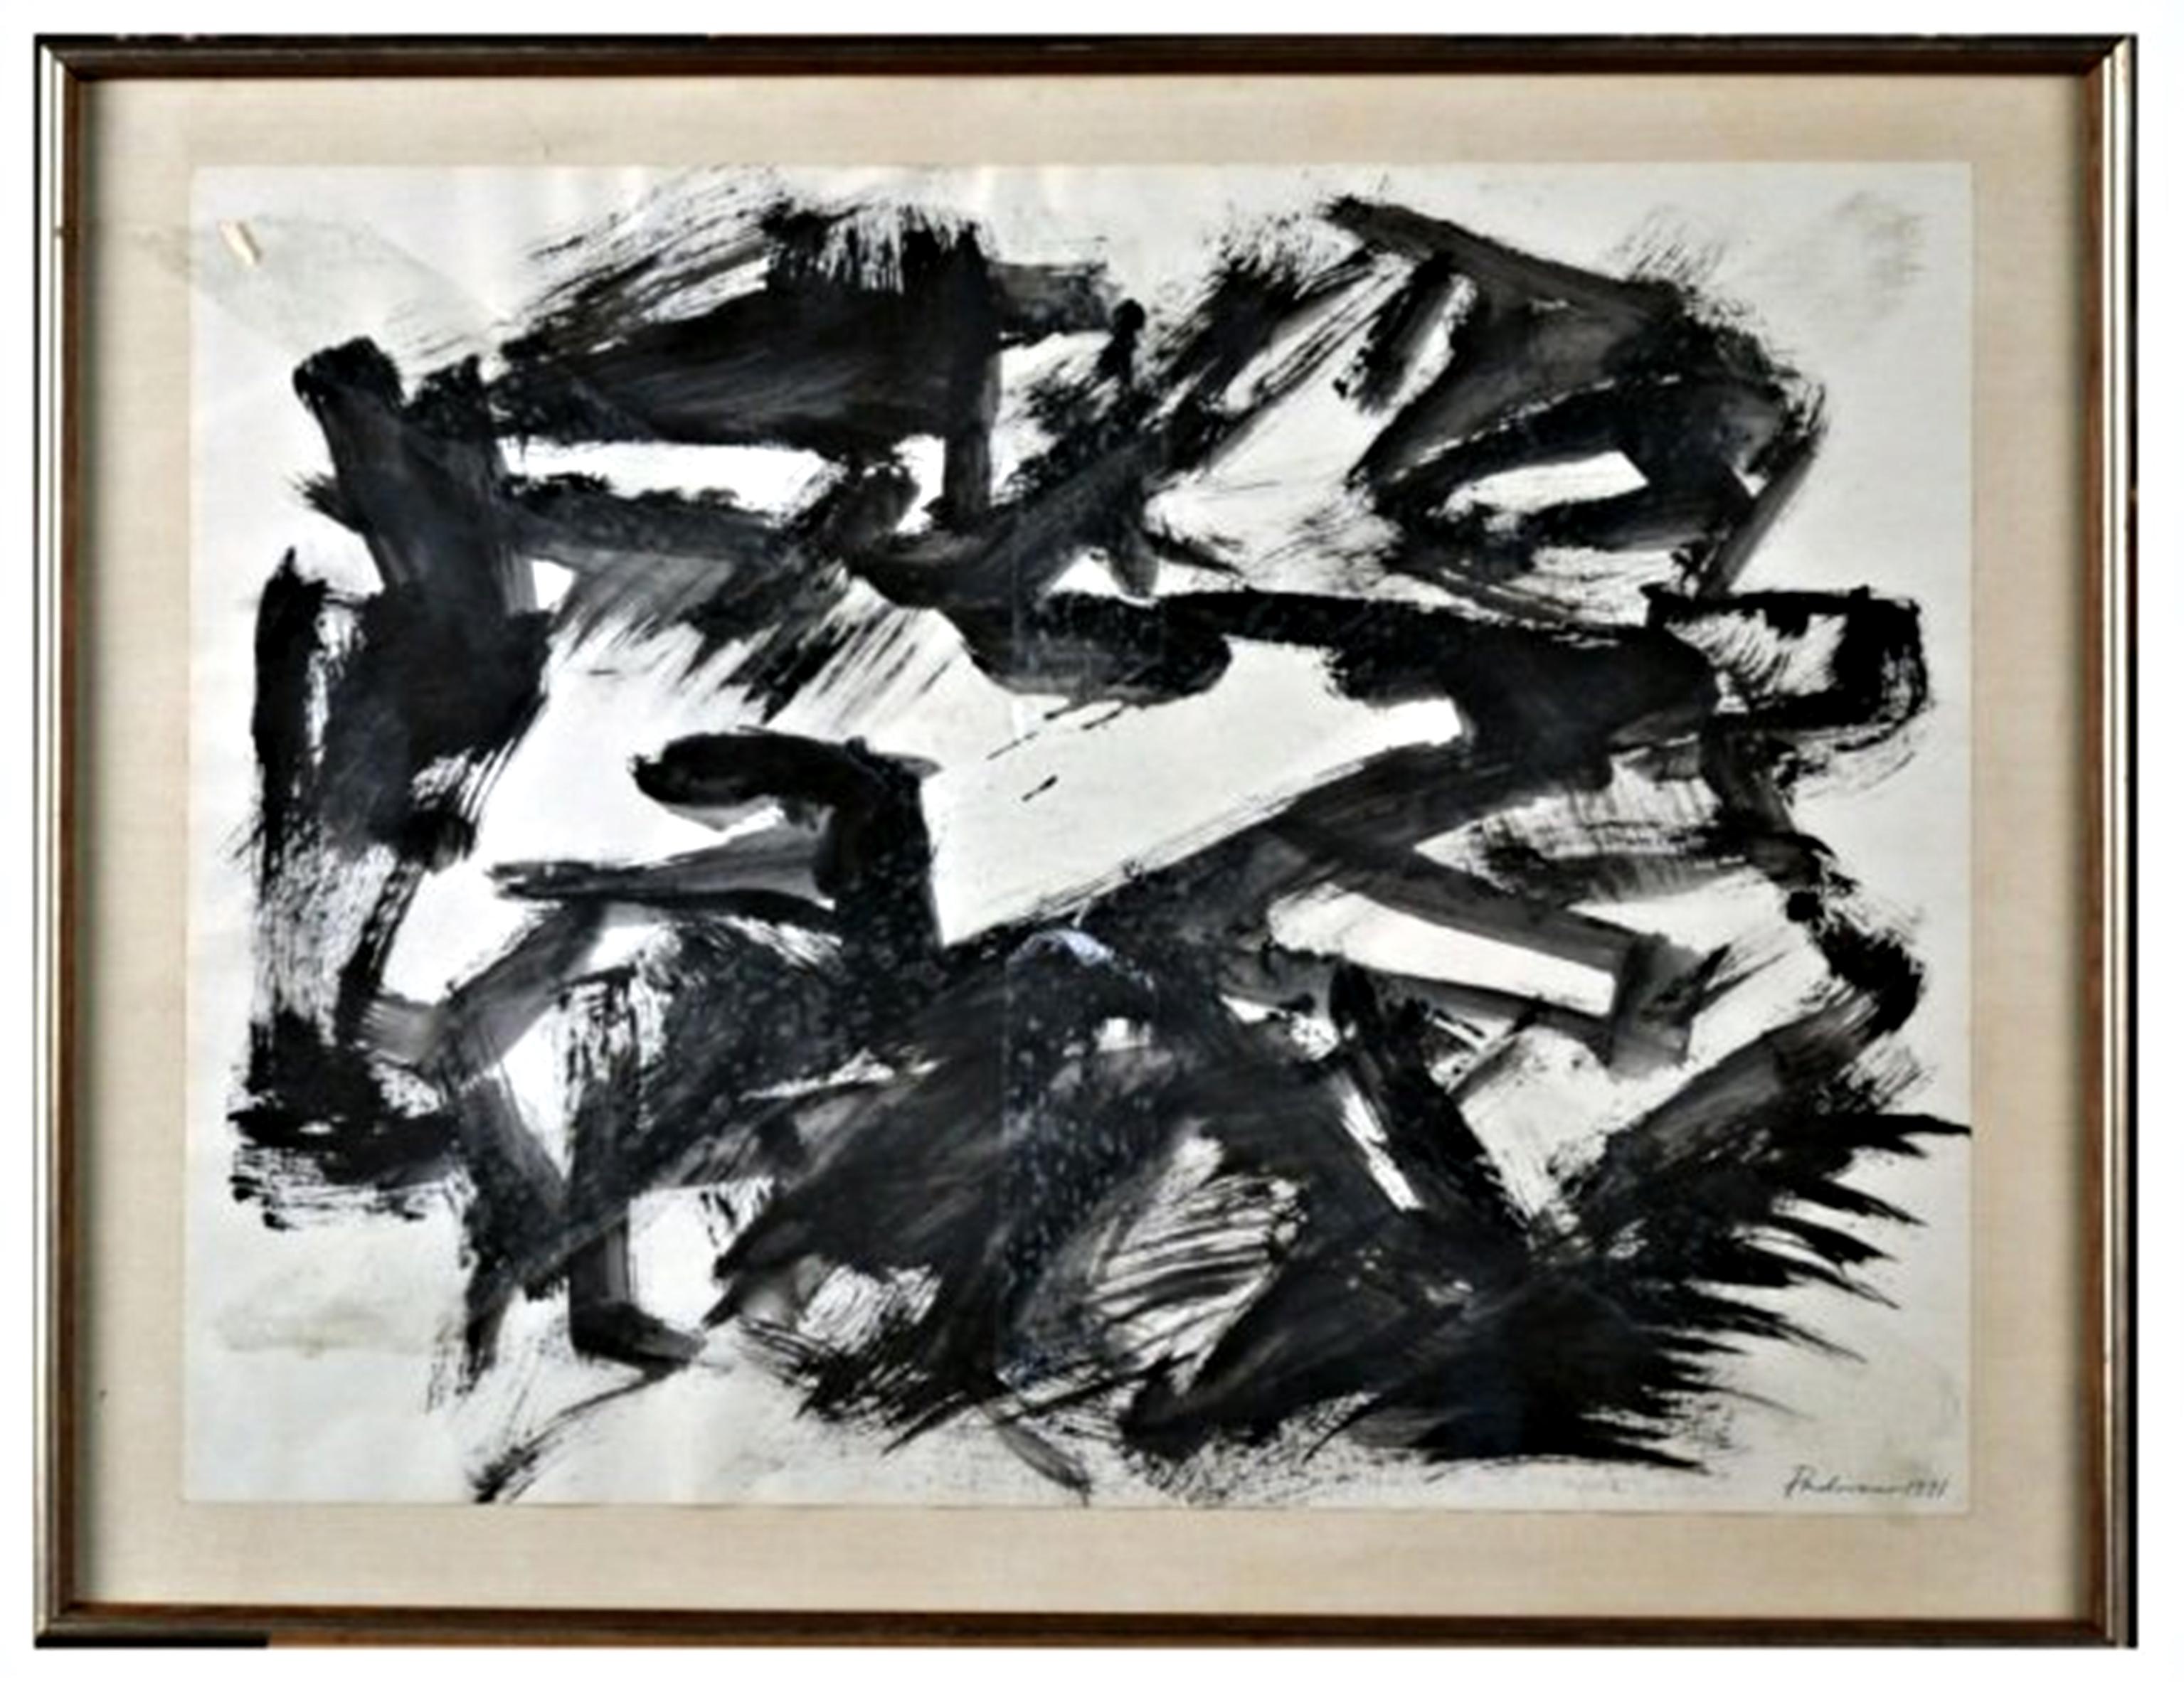 Anthony Padovano Abstract Painting – Abstrakt-expressionistische Zeichnung ohne Titel des Bildhauers, signiert, 1970er Jahre